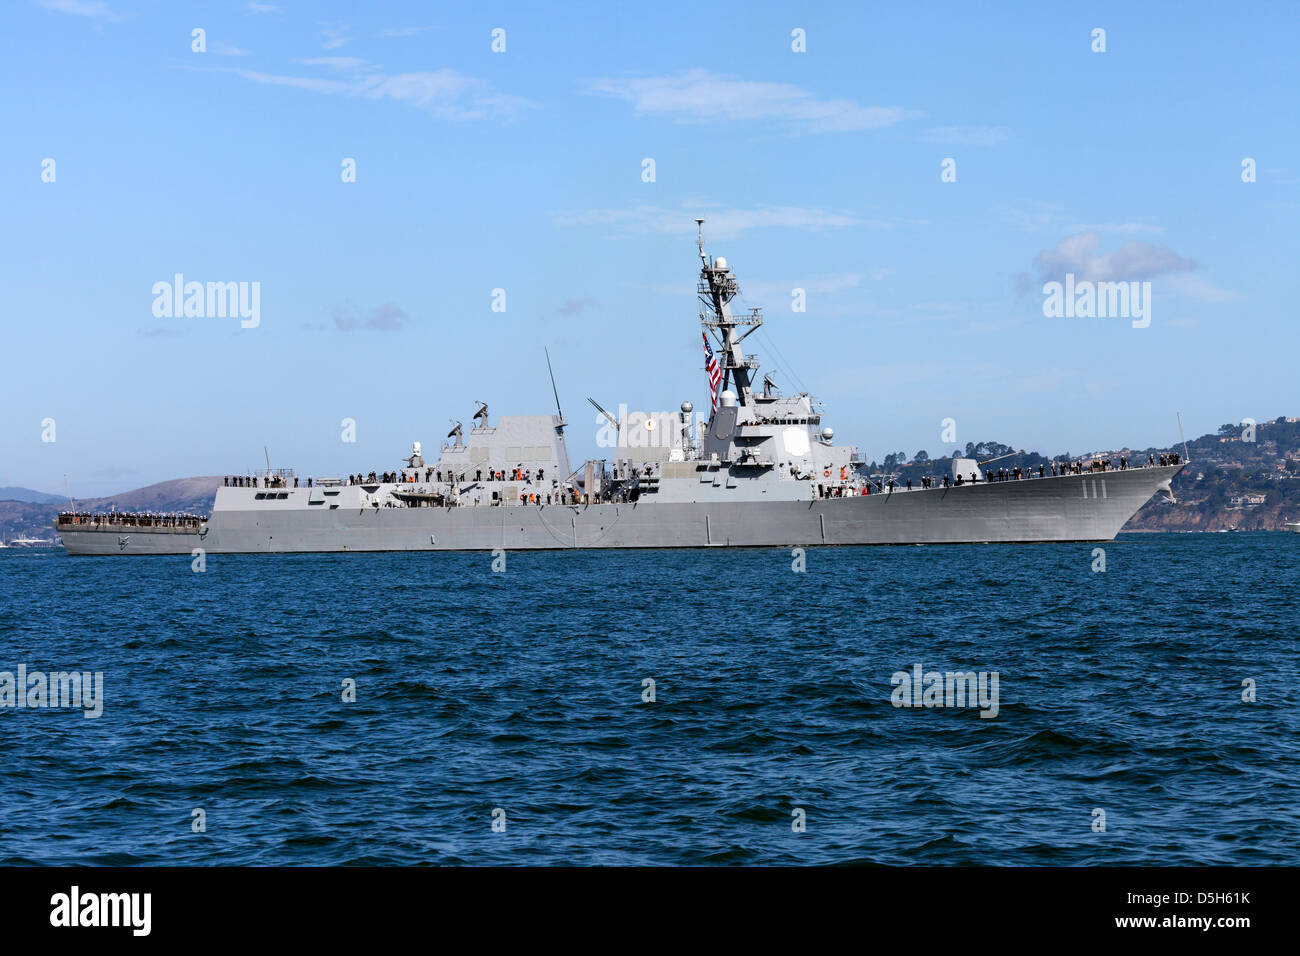 La classe Arleigh Burke destroyer lance-missiles USS Spruance (DDG 111) sur la baie de San Francisco. Banque D'Images